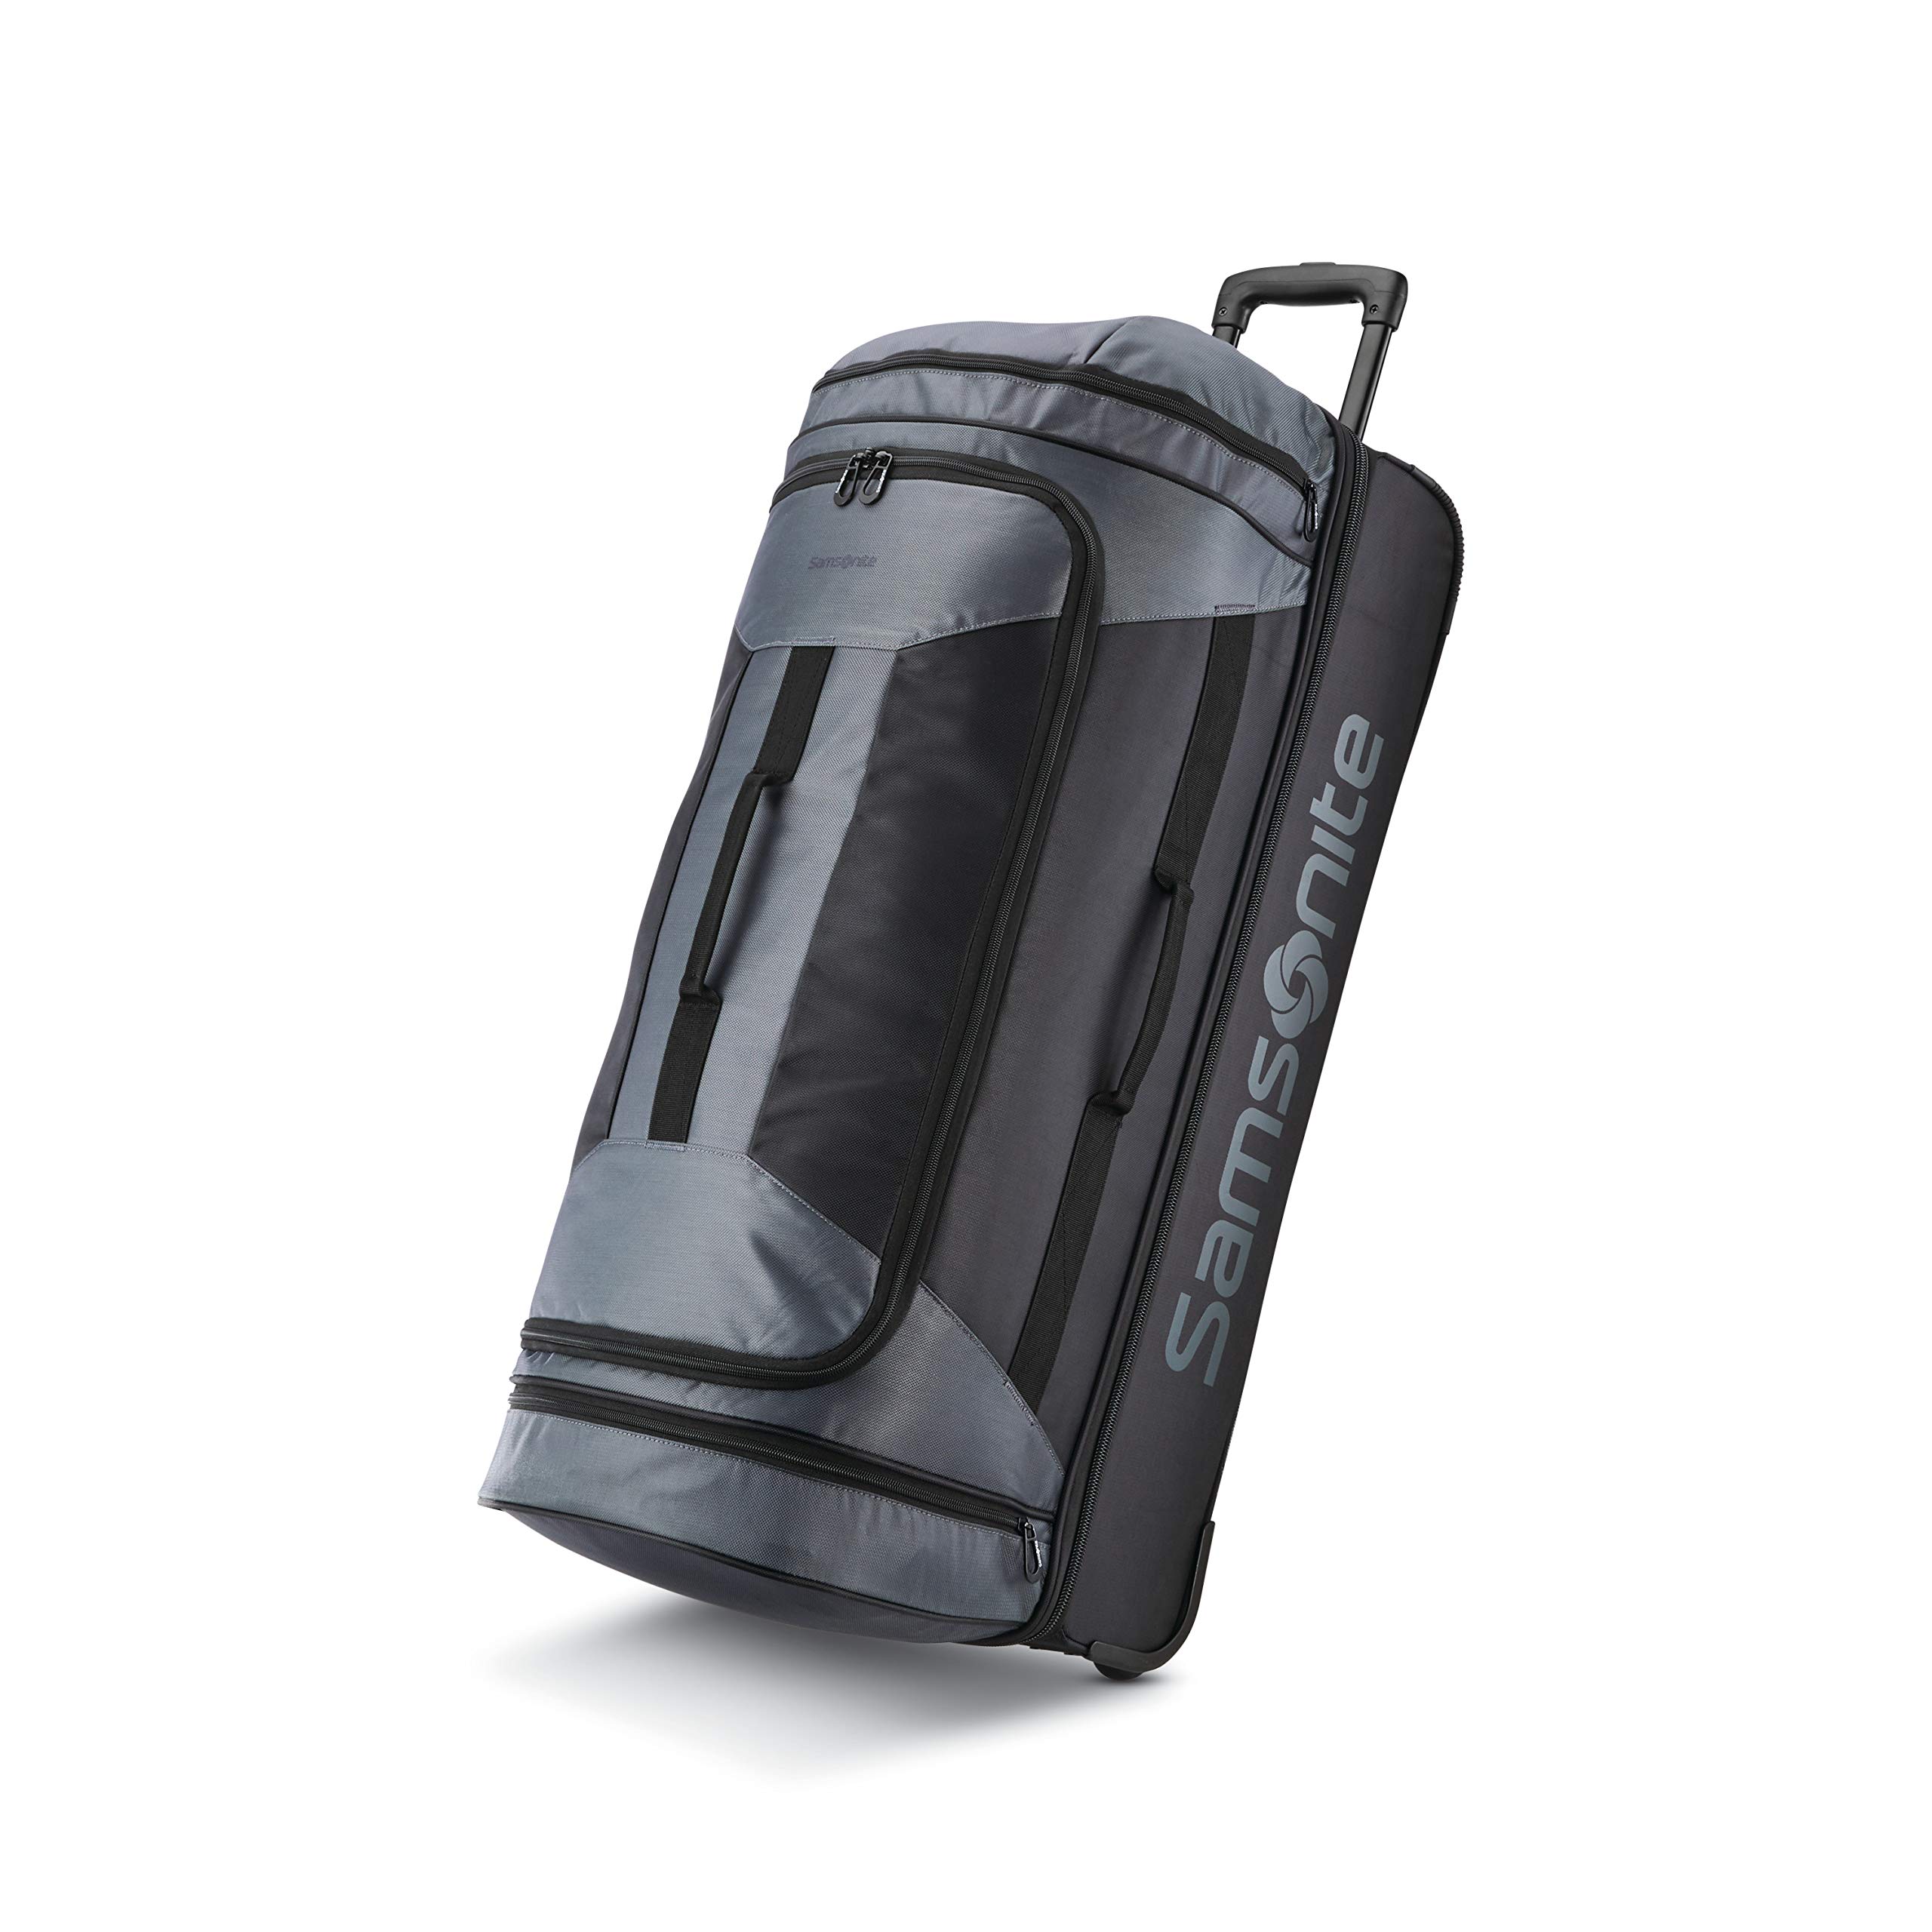 Backpack Duffel Samsonite Tectonic 2 Convertible Sport 26" Duffel Bag New 